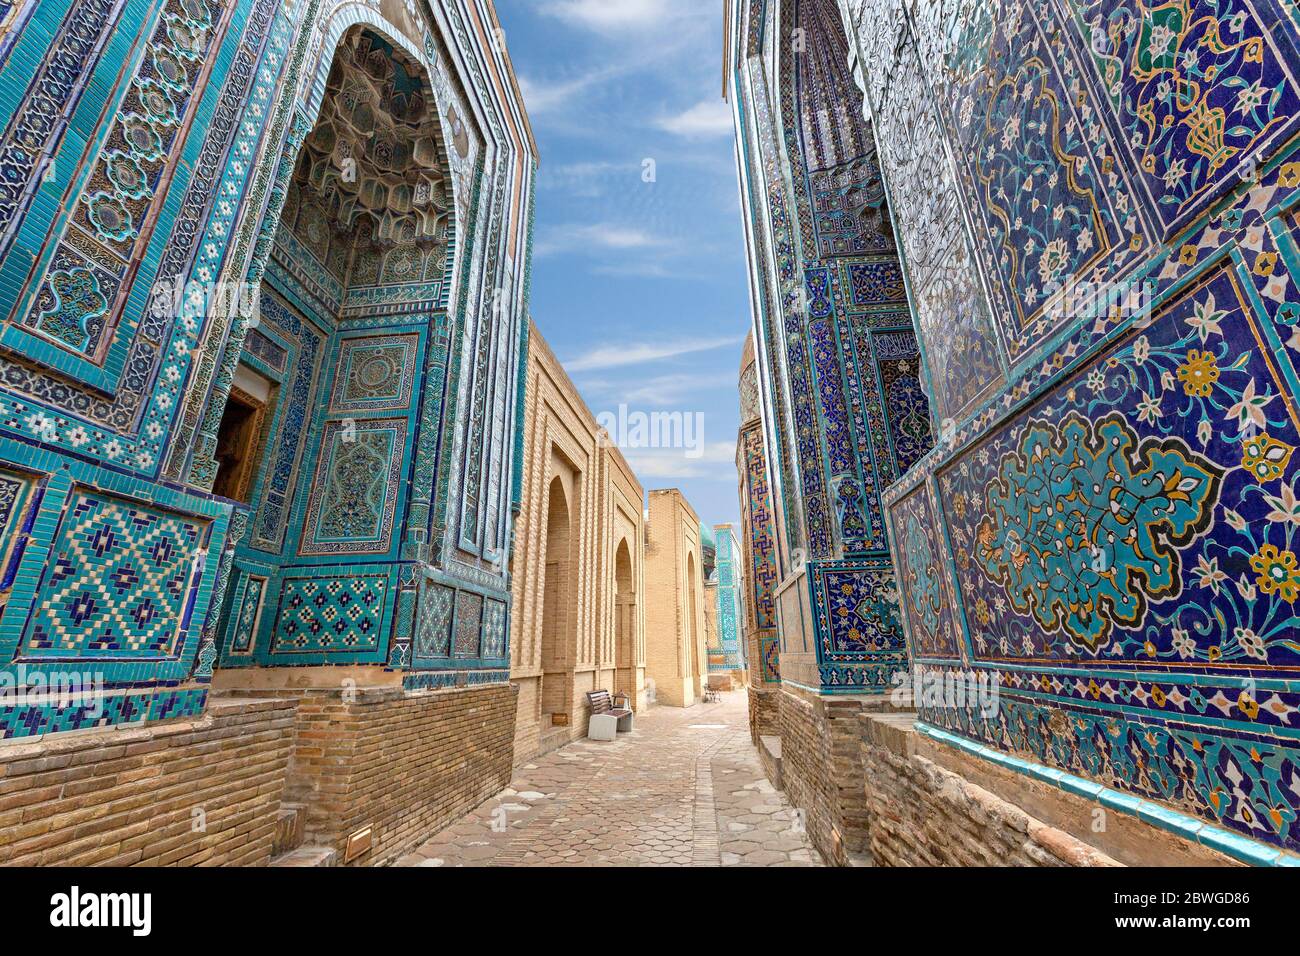 Historical necropolis and mausoleums of Shakhi Zinda, Samarkand, Uzbekistan Stock Photo